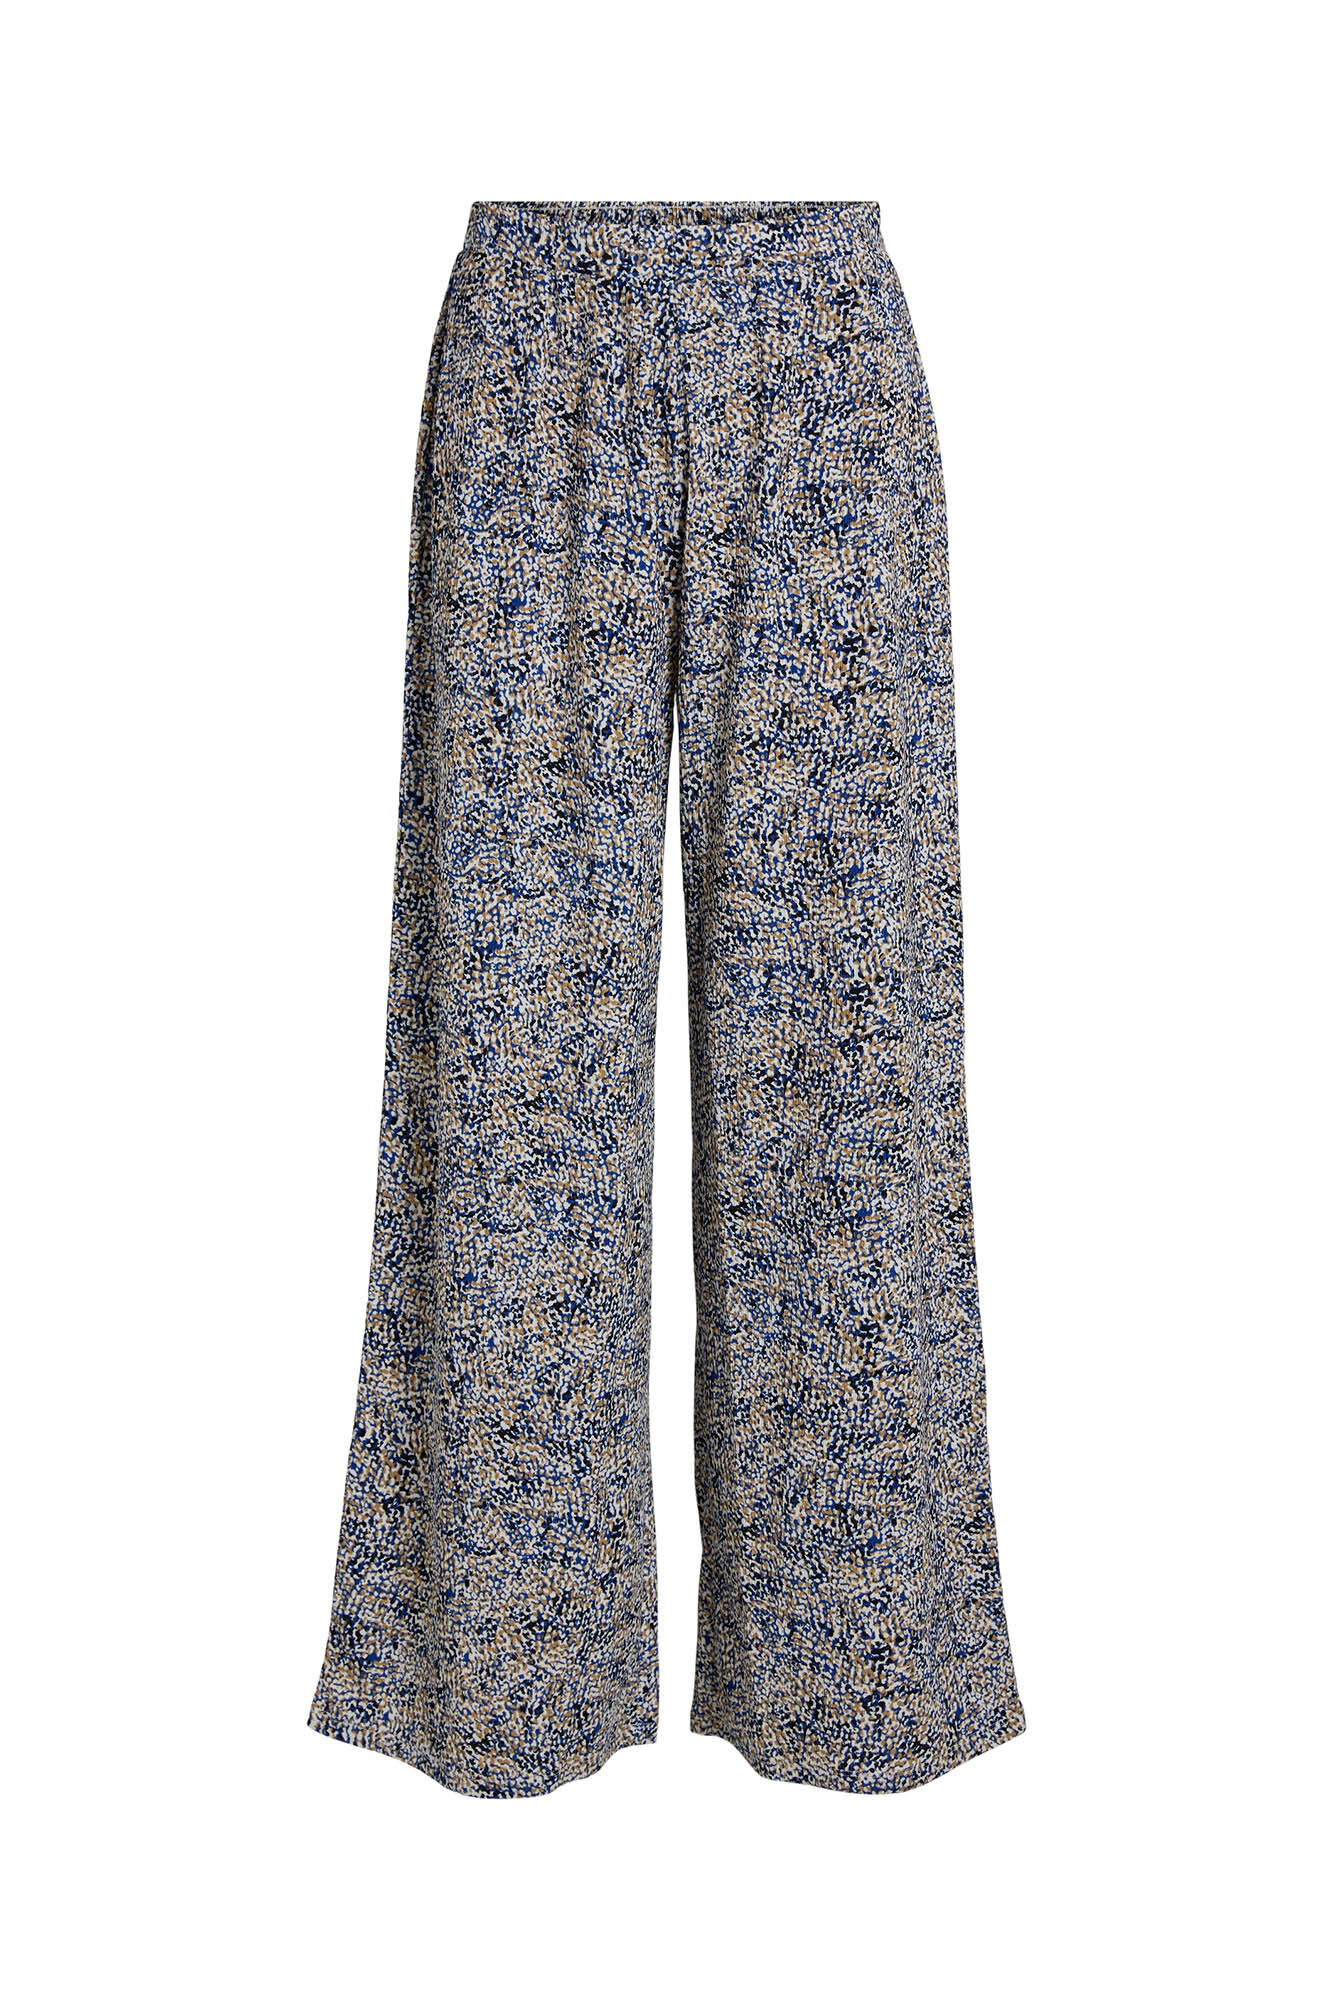 ESPRIT - Soft jersey trousers with plissé pleats at our online shop